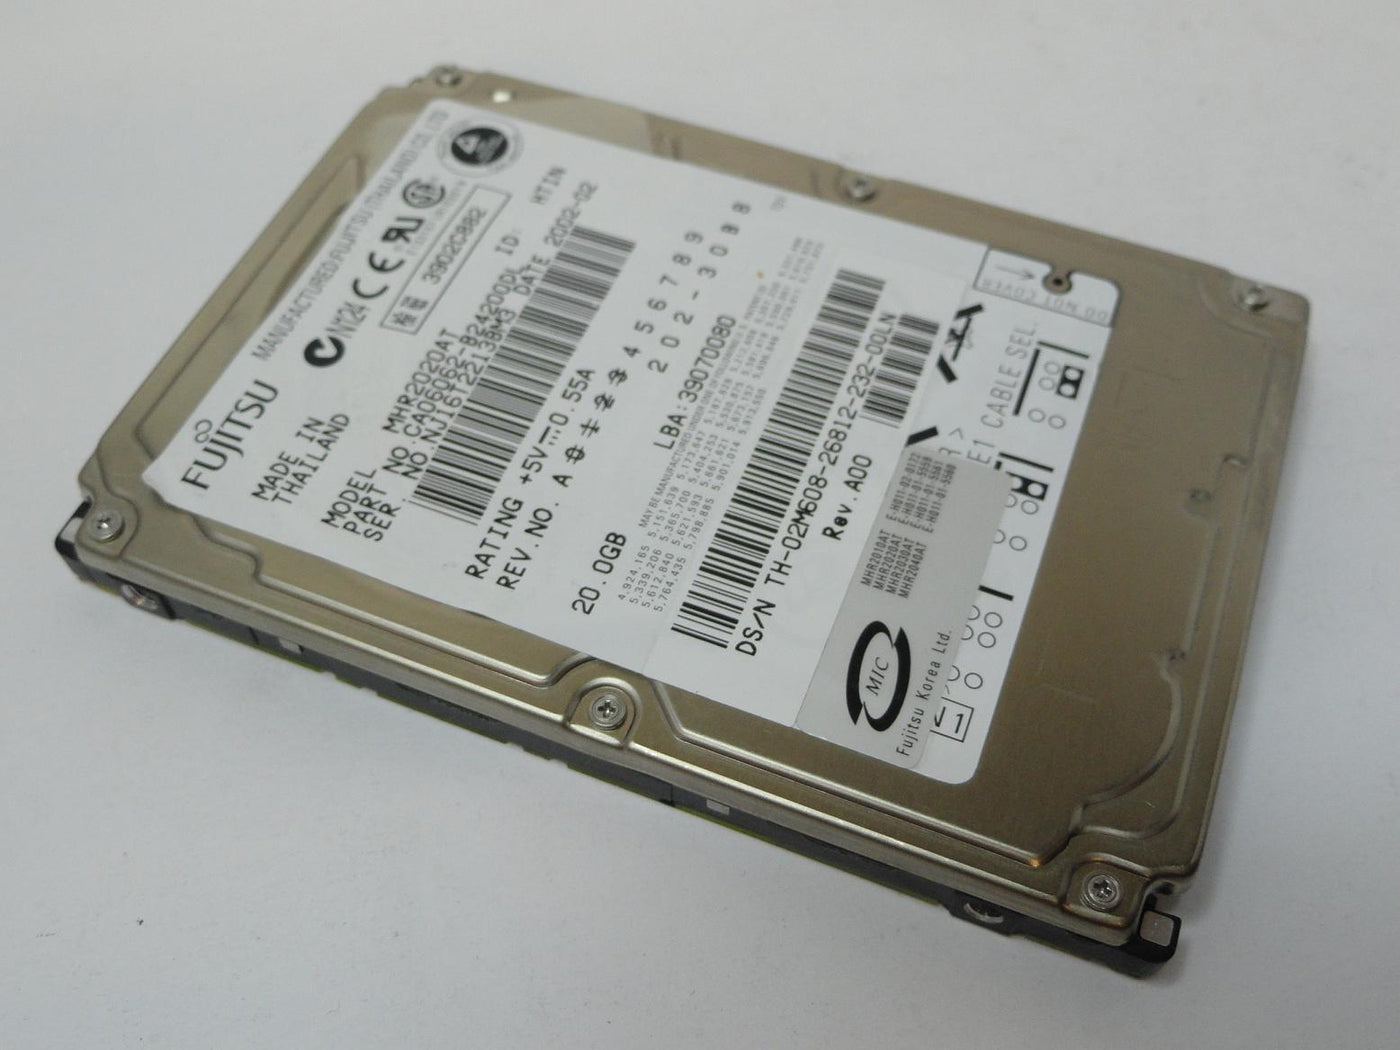 CA06062-B24200DL - Fujitsu Dell 20GB IDE 4200rpm 2.5in HDD - Refurbished